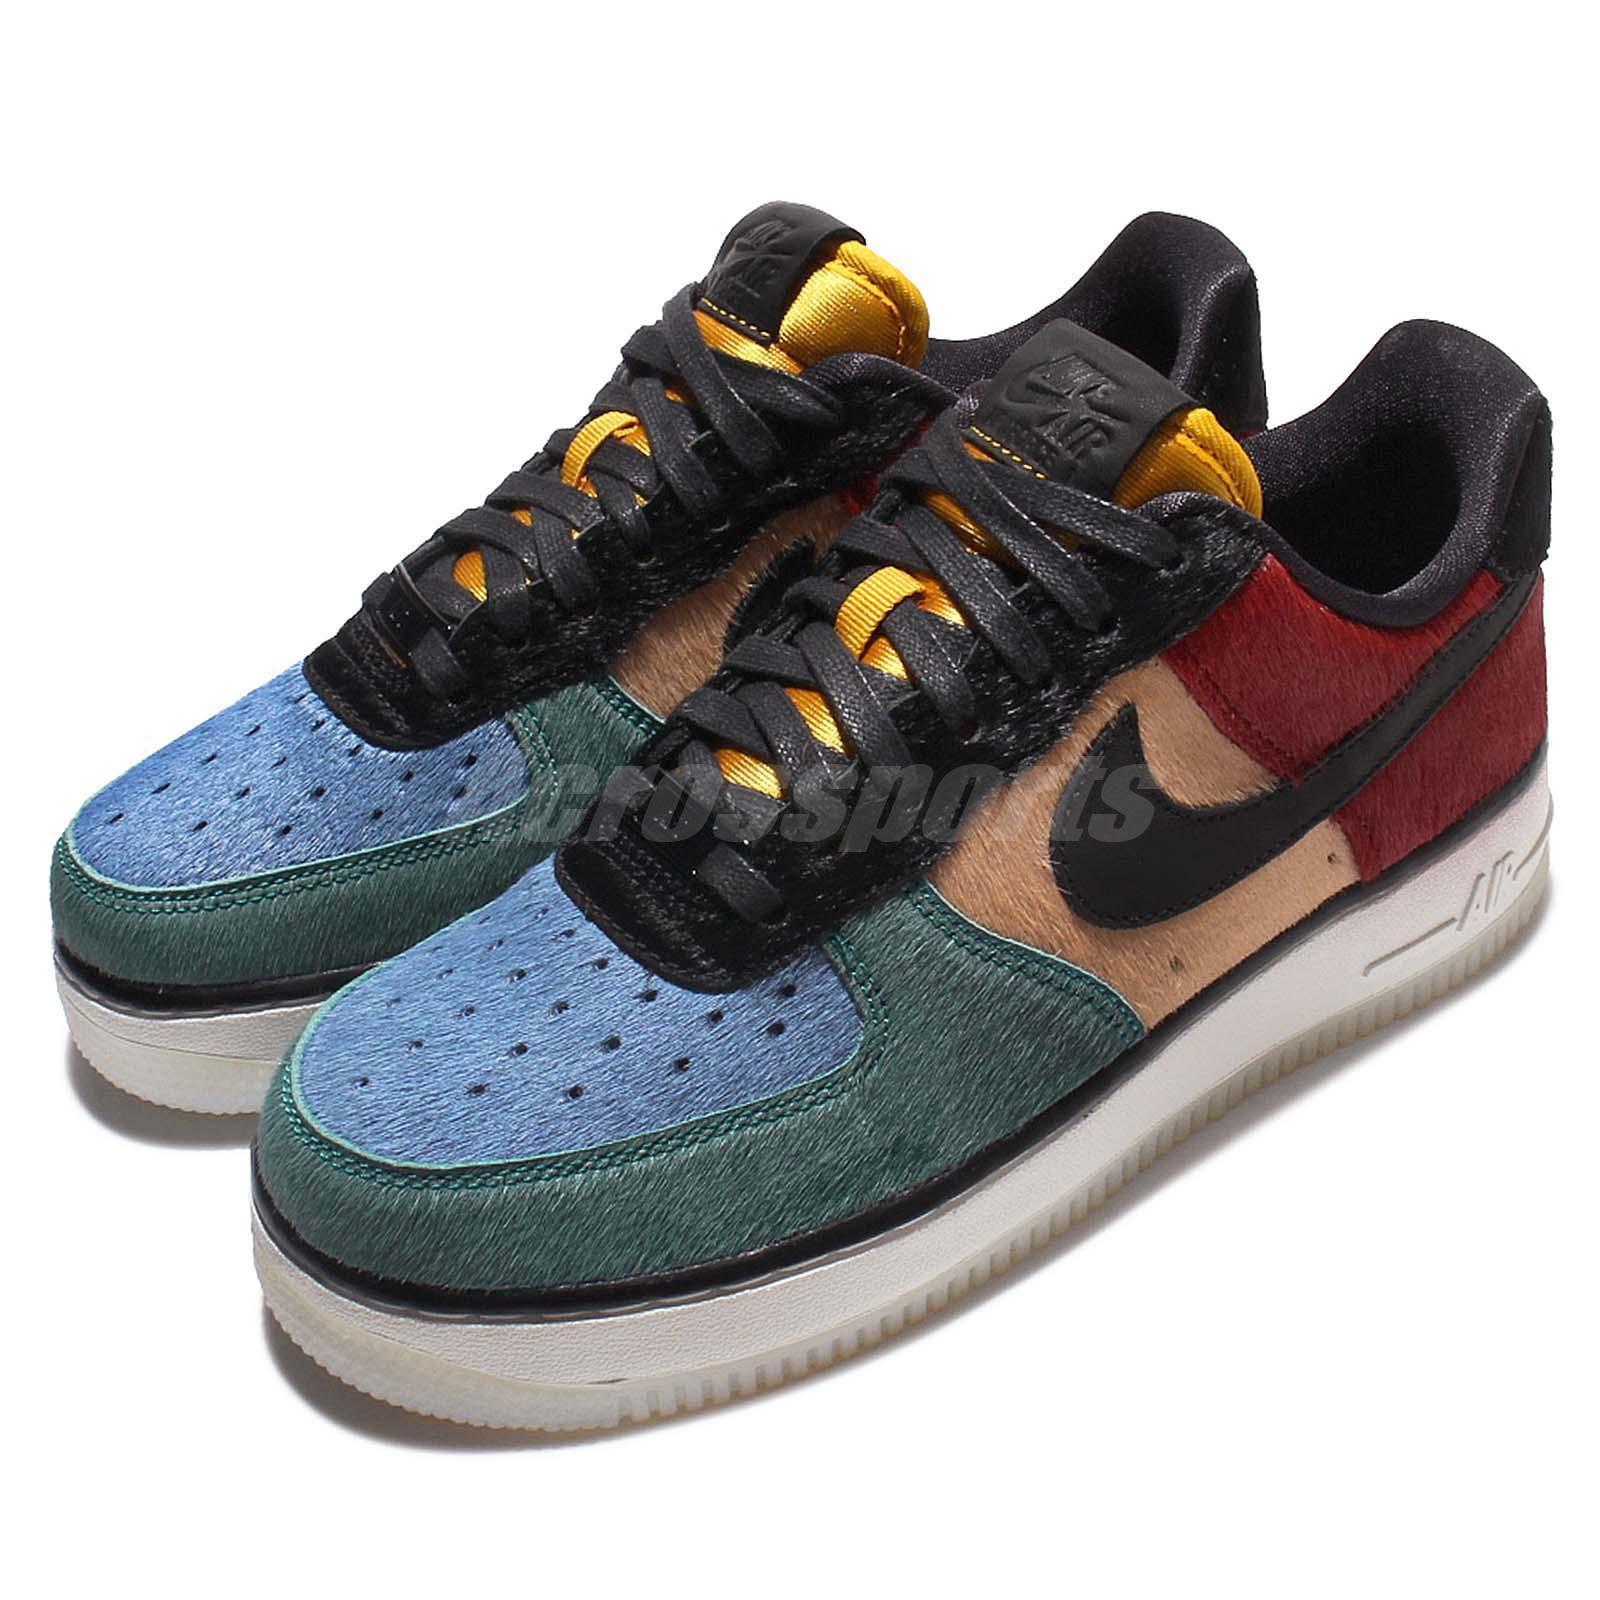 Painéis De Pelos De Pônei Multicoloridos Dão As Caras Em Um Air Force 1 |  SneakersBR - Lifestyle Sneakerhead